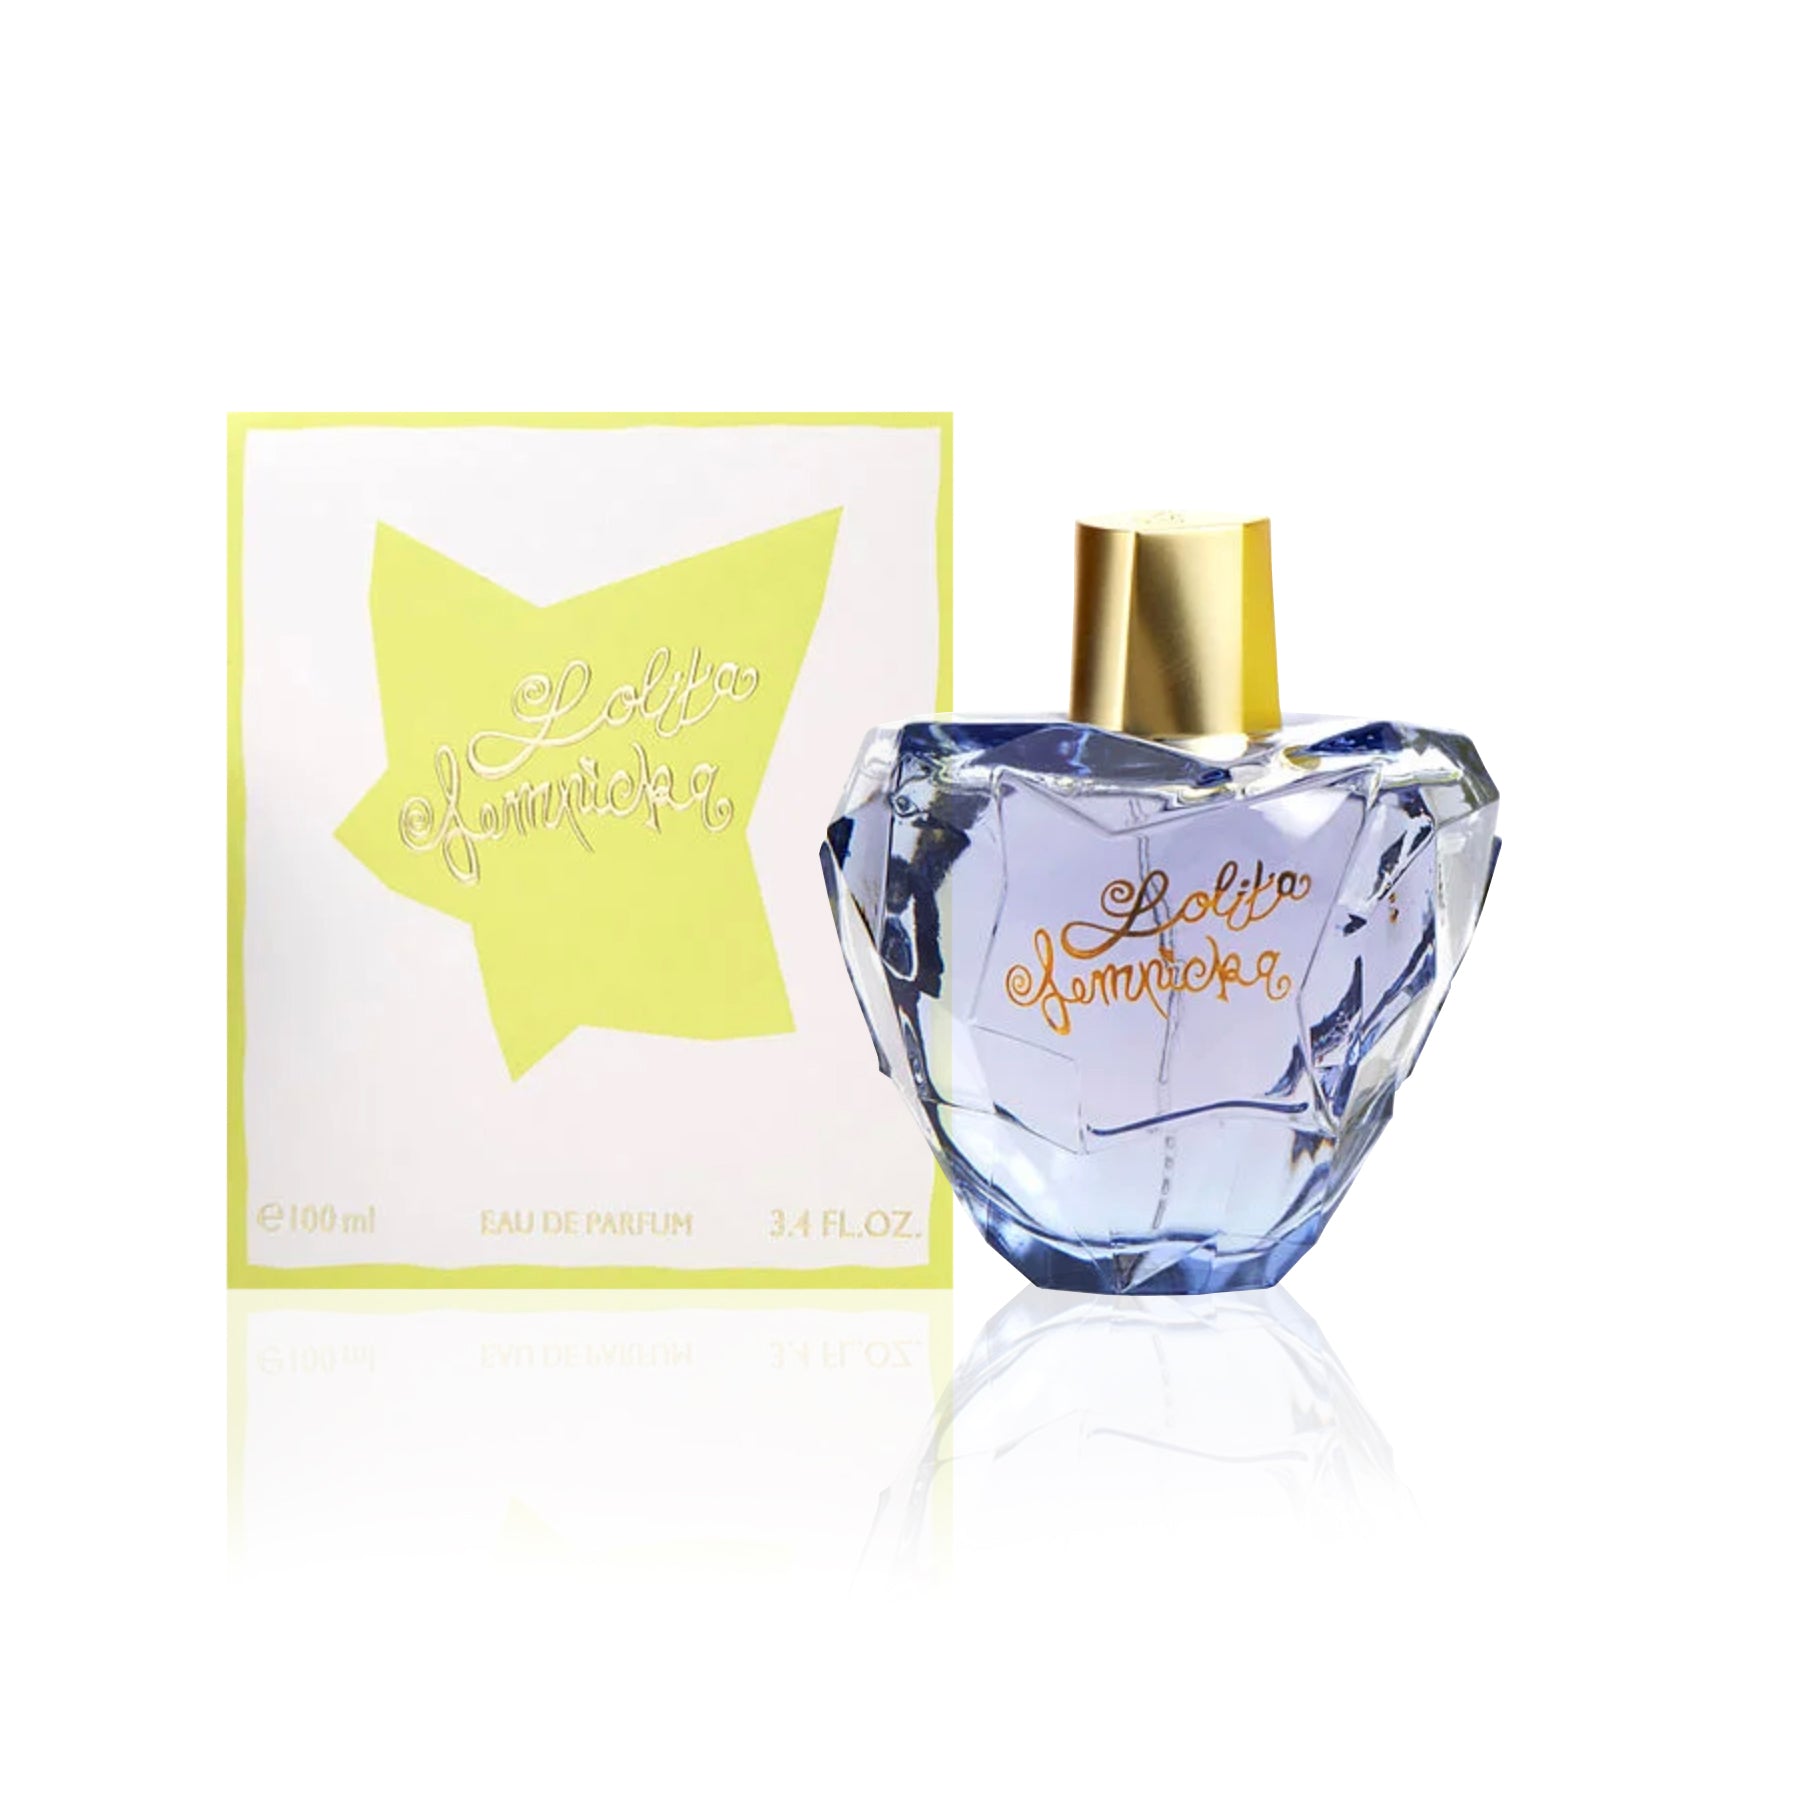 Lolita Lempicka Eau de Parfum Spray for Women by Lolita Lempicka Perfume 1.0 oz. Click to open in modal